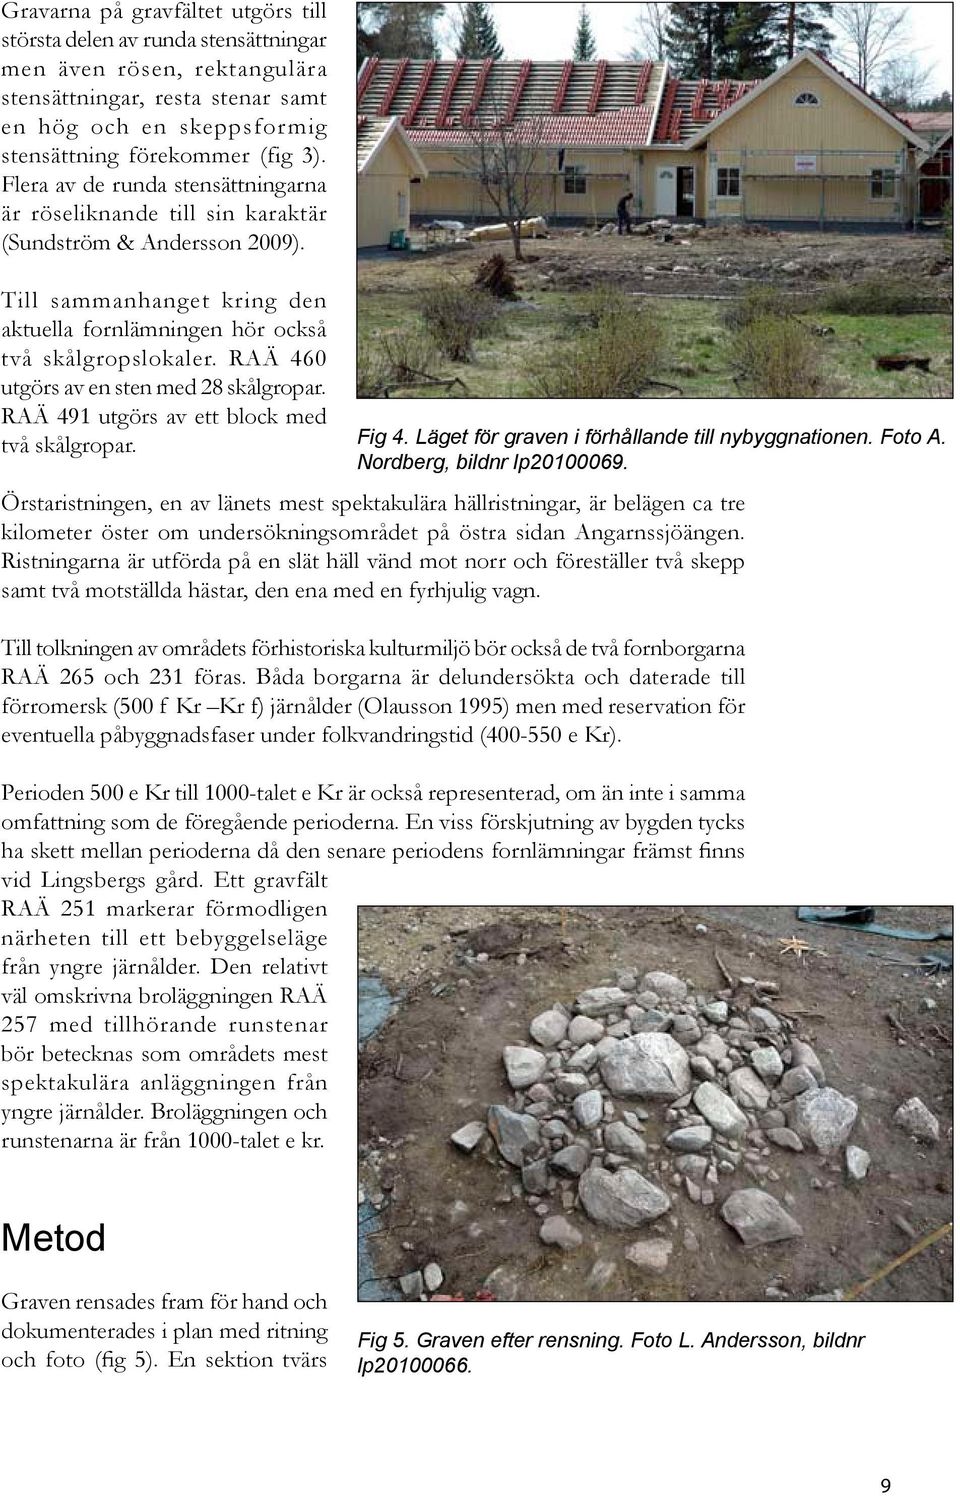 RAÄ 460 utgörs av en sten med 28 skålgropar. RAÄ 491 utgörs av ett block med två skålgropar. Fig 4. Läget för graven i förhållande till nybyggnationen. Foto A. Nordberg, bildnr lp20100069.